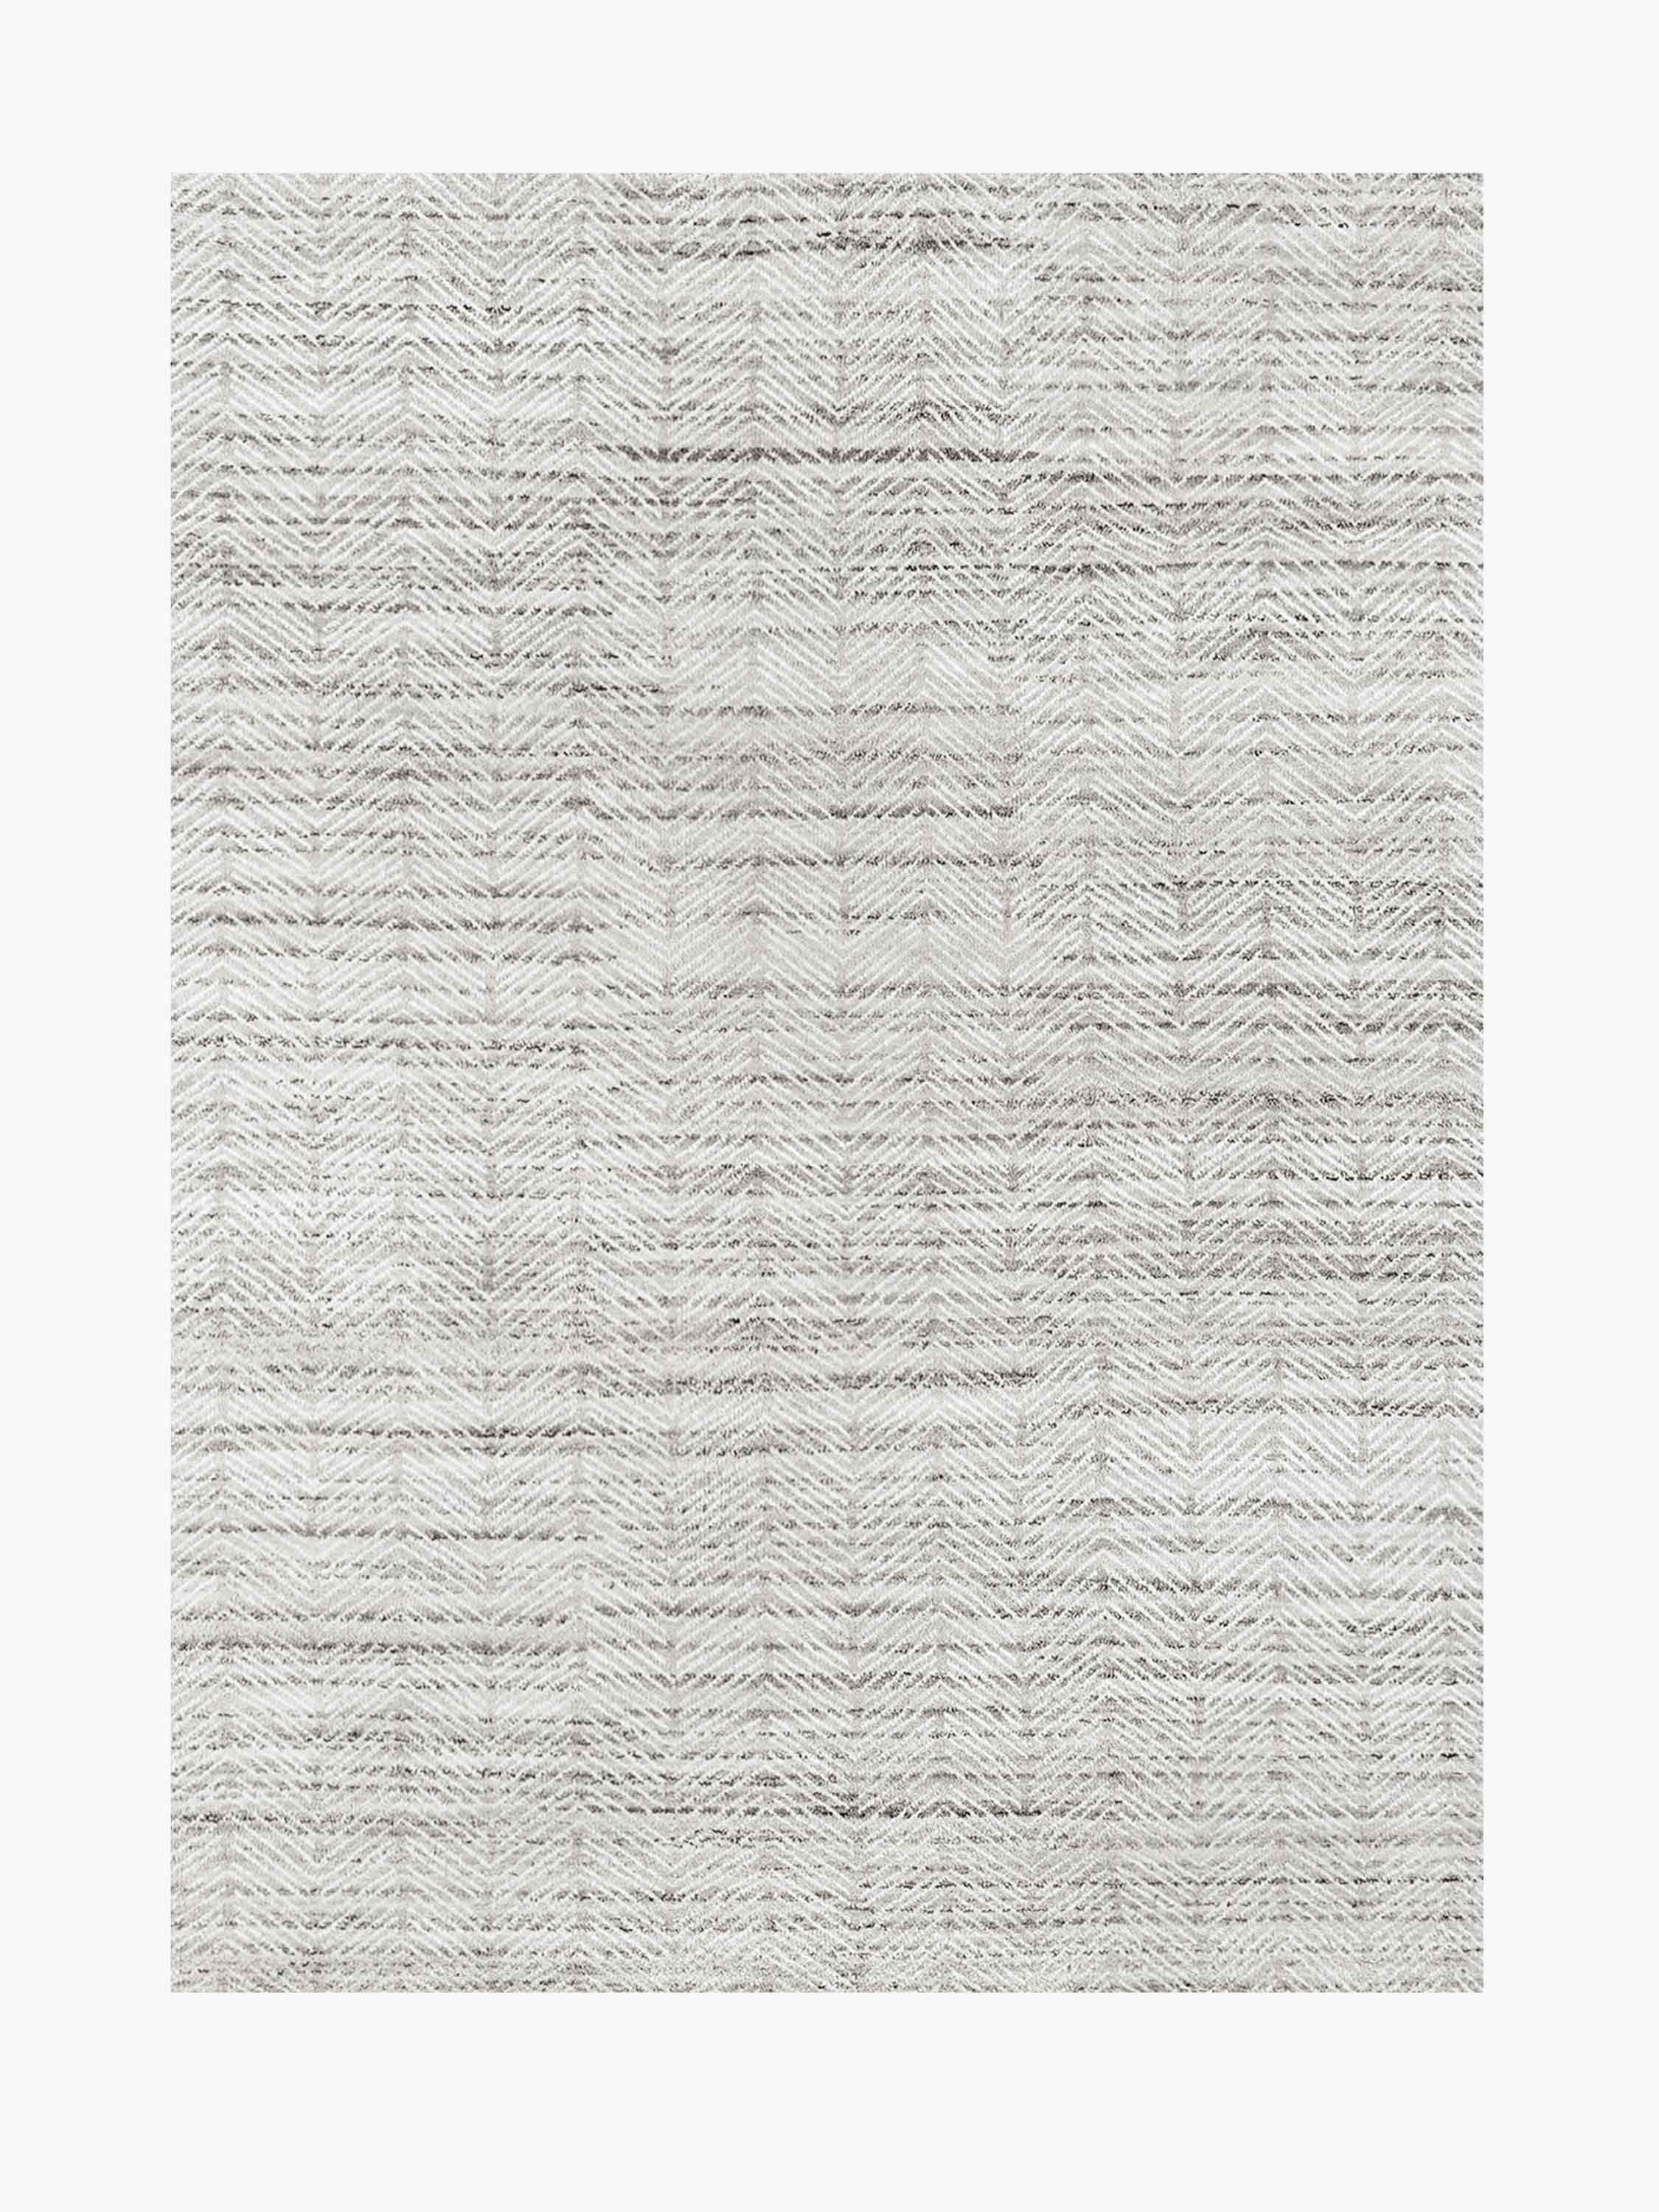 For Sale: Gray (Silver/White) Ben Soleimani Alia Rug– Hand-woven Chevron Wool + Viscose Black/Gray 12'x15'